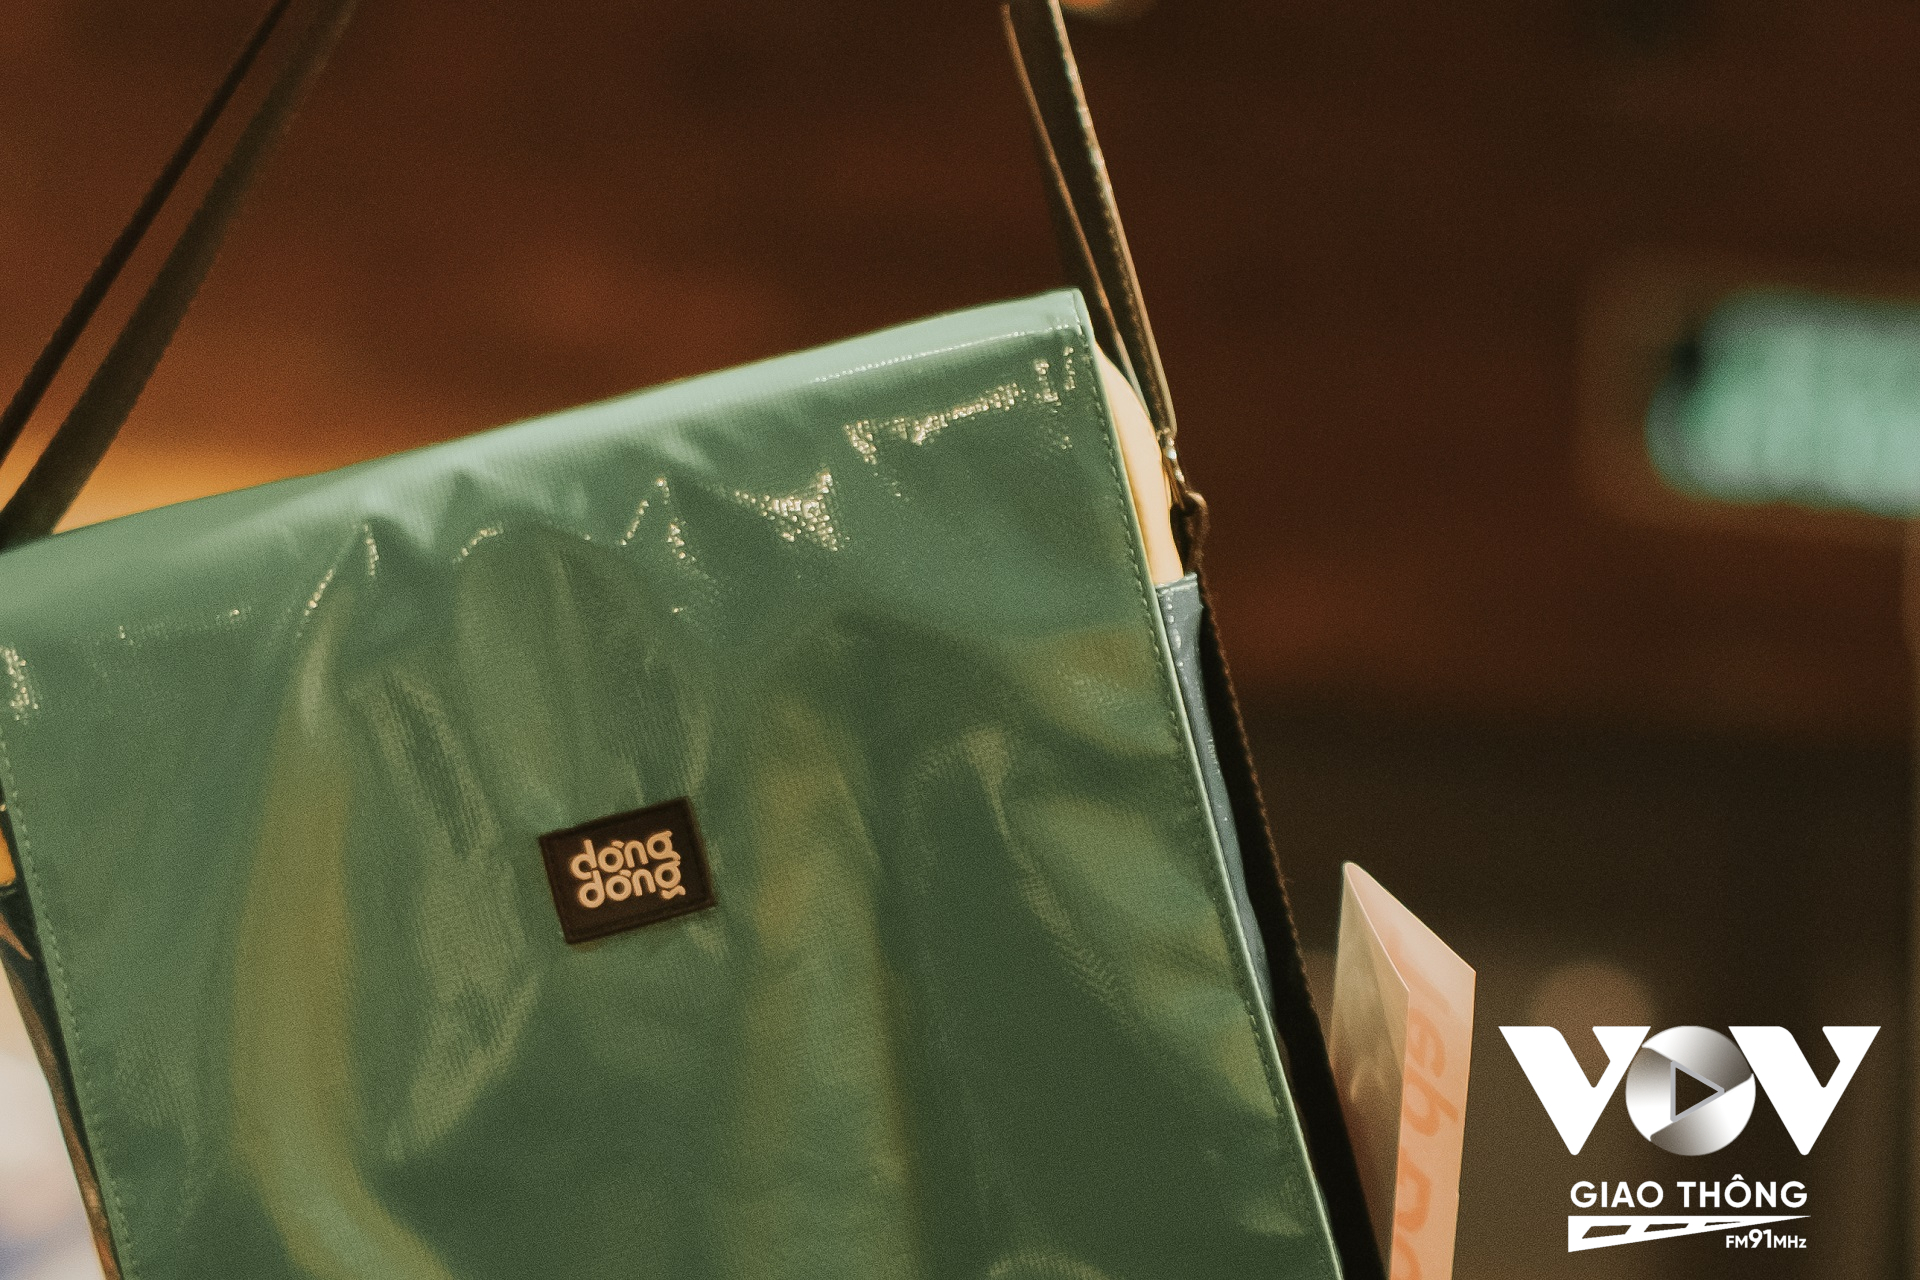 Những tấm bạt sau một khoảng thời gian sử dụng hầu như chỉ vứt đi thì Dòng Dòng đã tìm cách thu gom, xử lý, vệ sinh và may thành những chiếc túi đeo chéo chống mưa, chống sốc và thân thiện với môi trường.